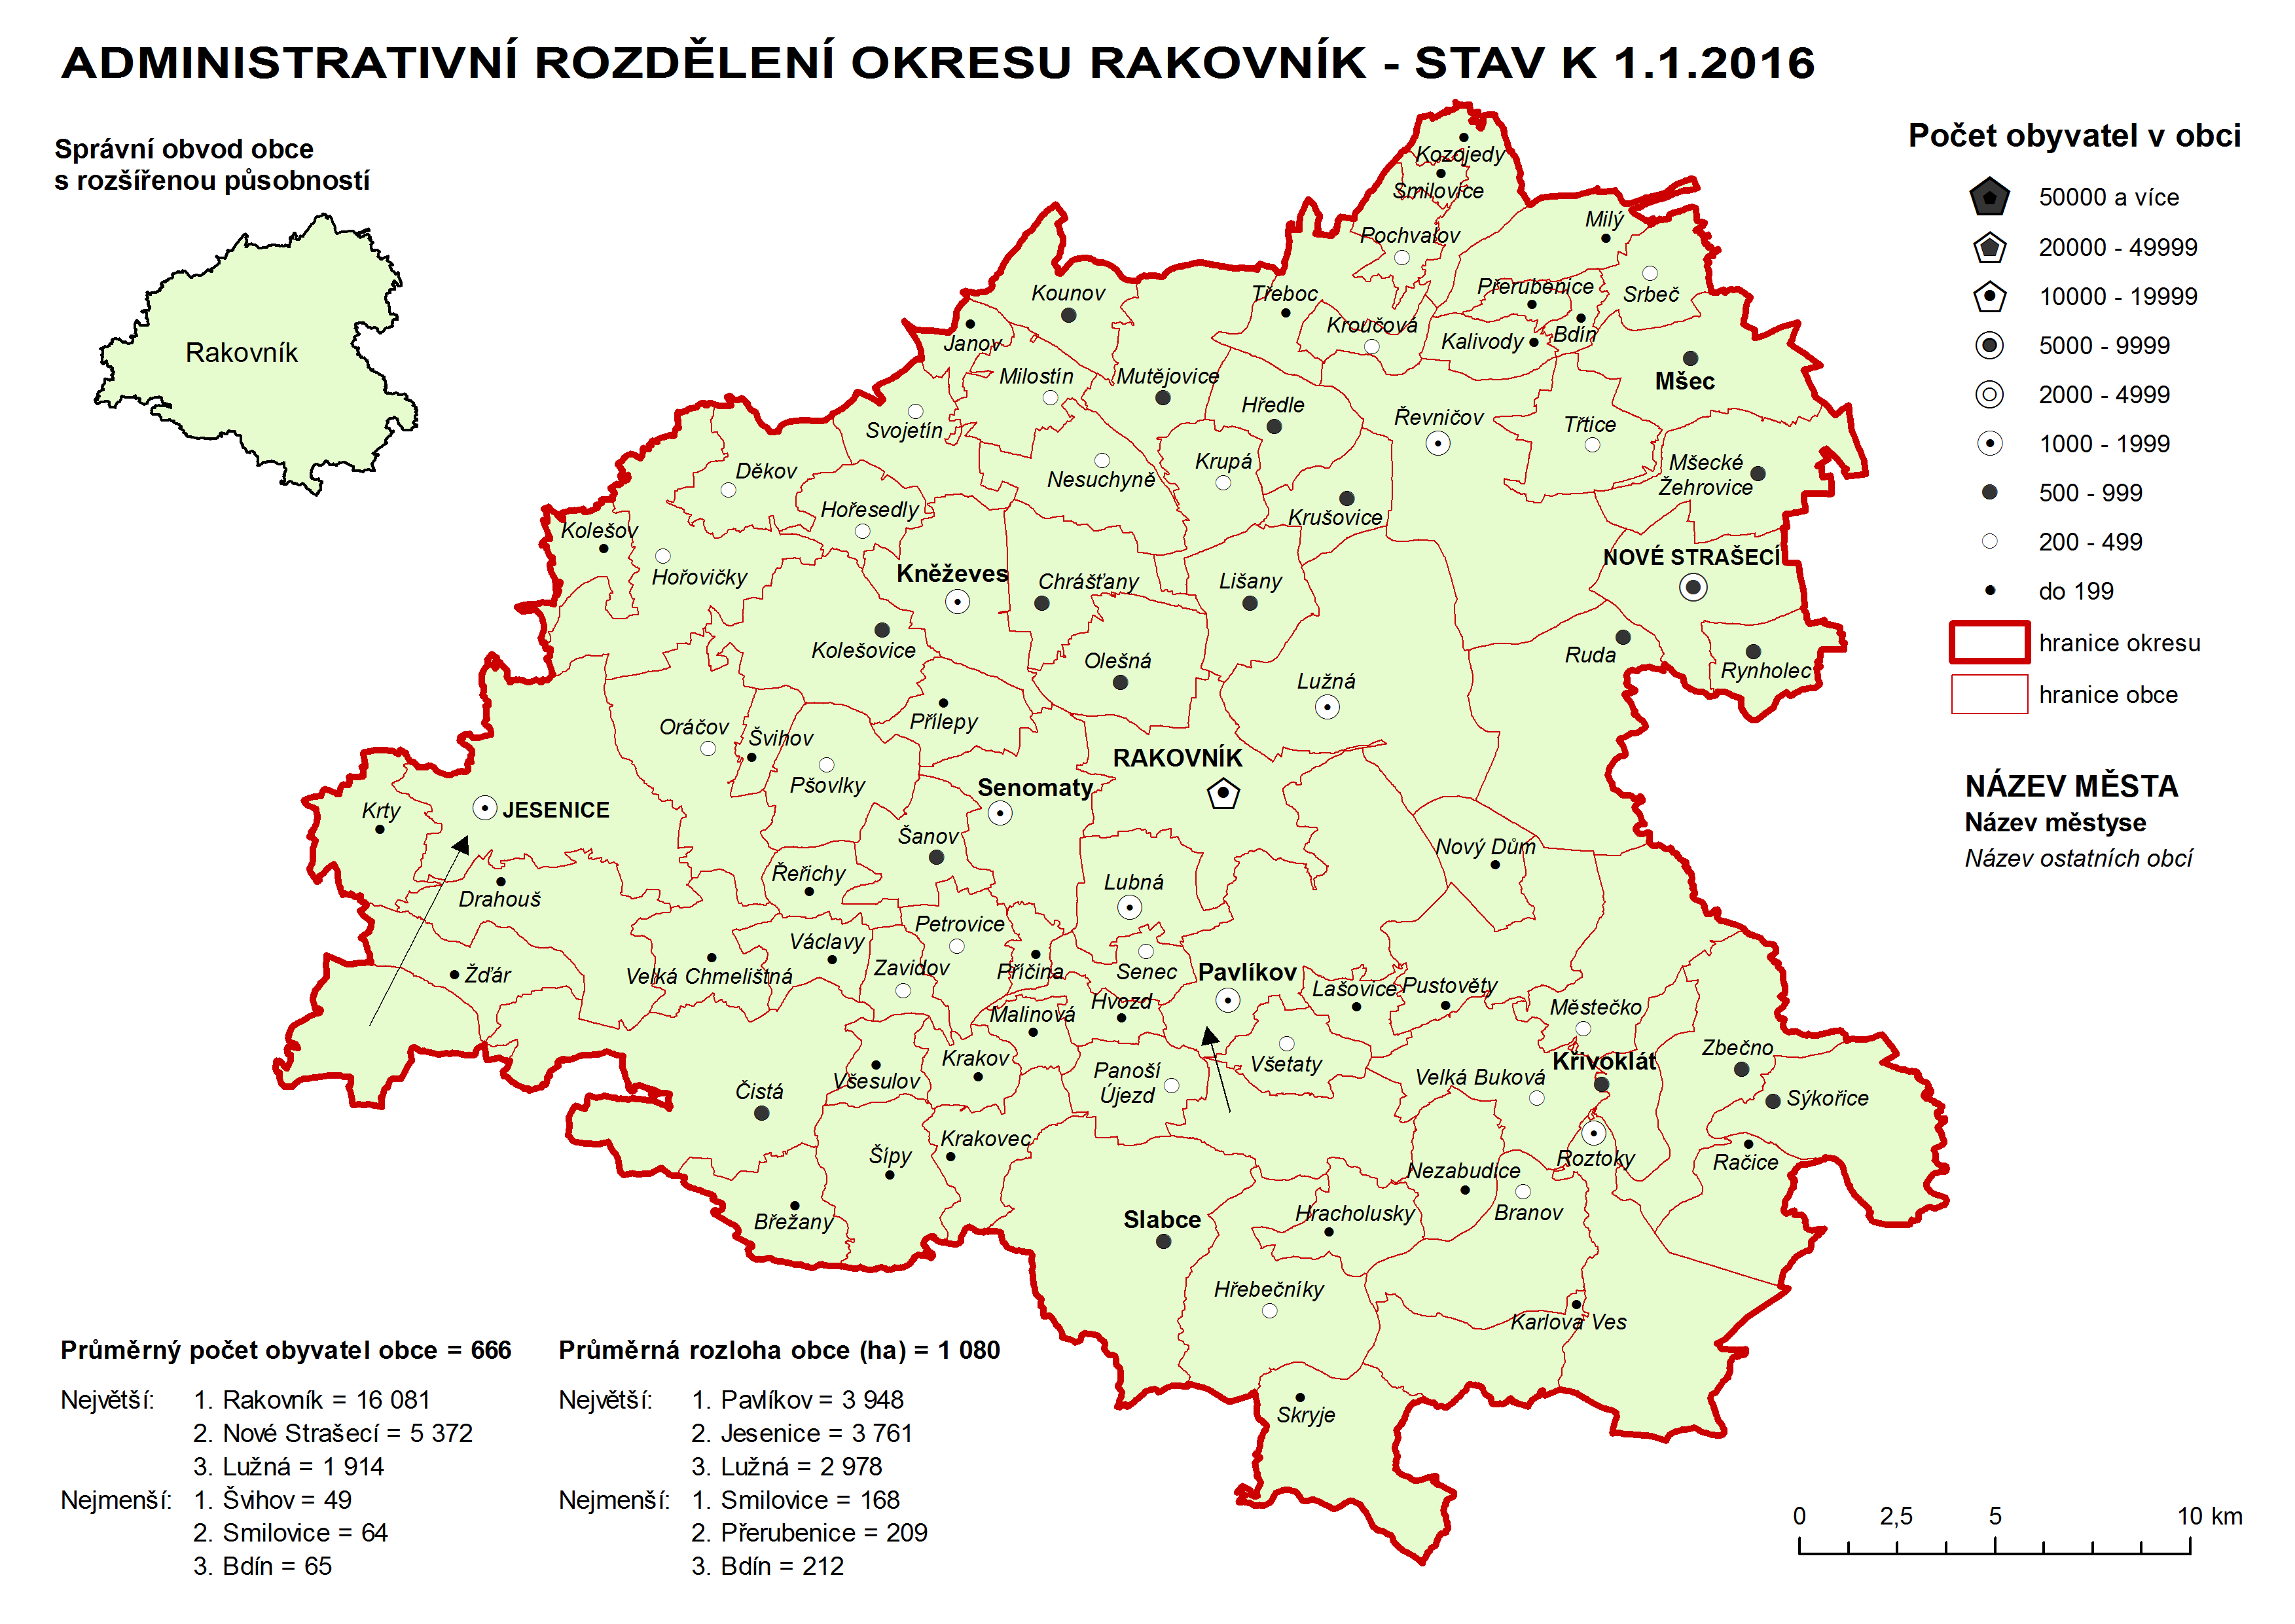 Administrativni rozdělení okresu Rakovník - stav k 1.1.2016